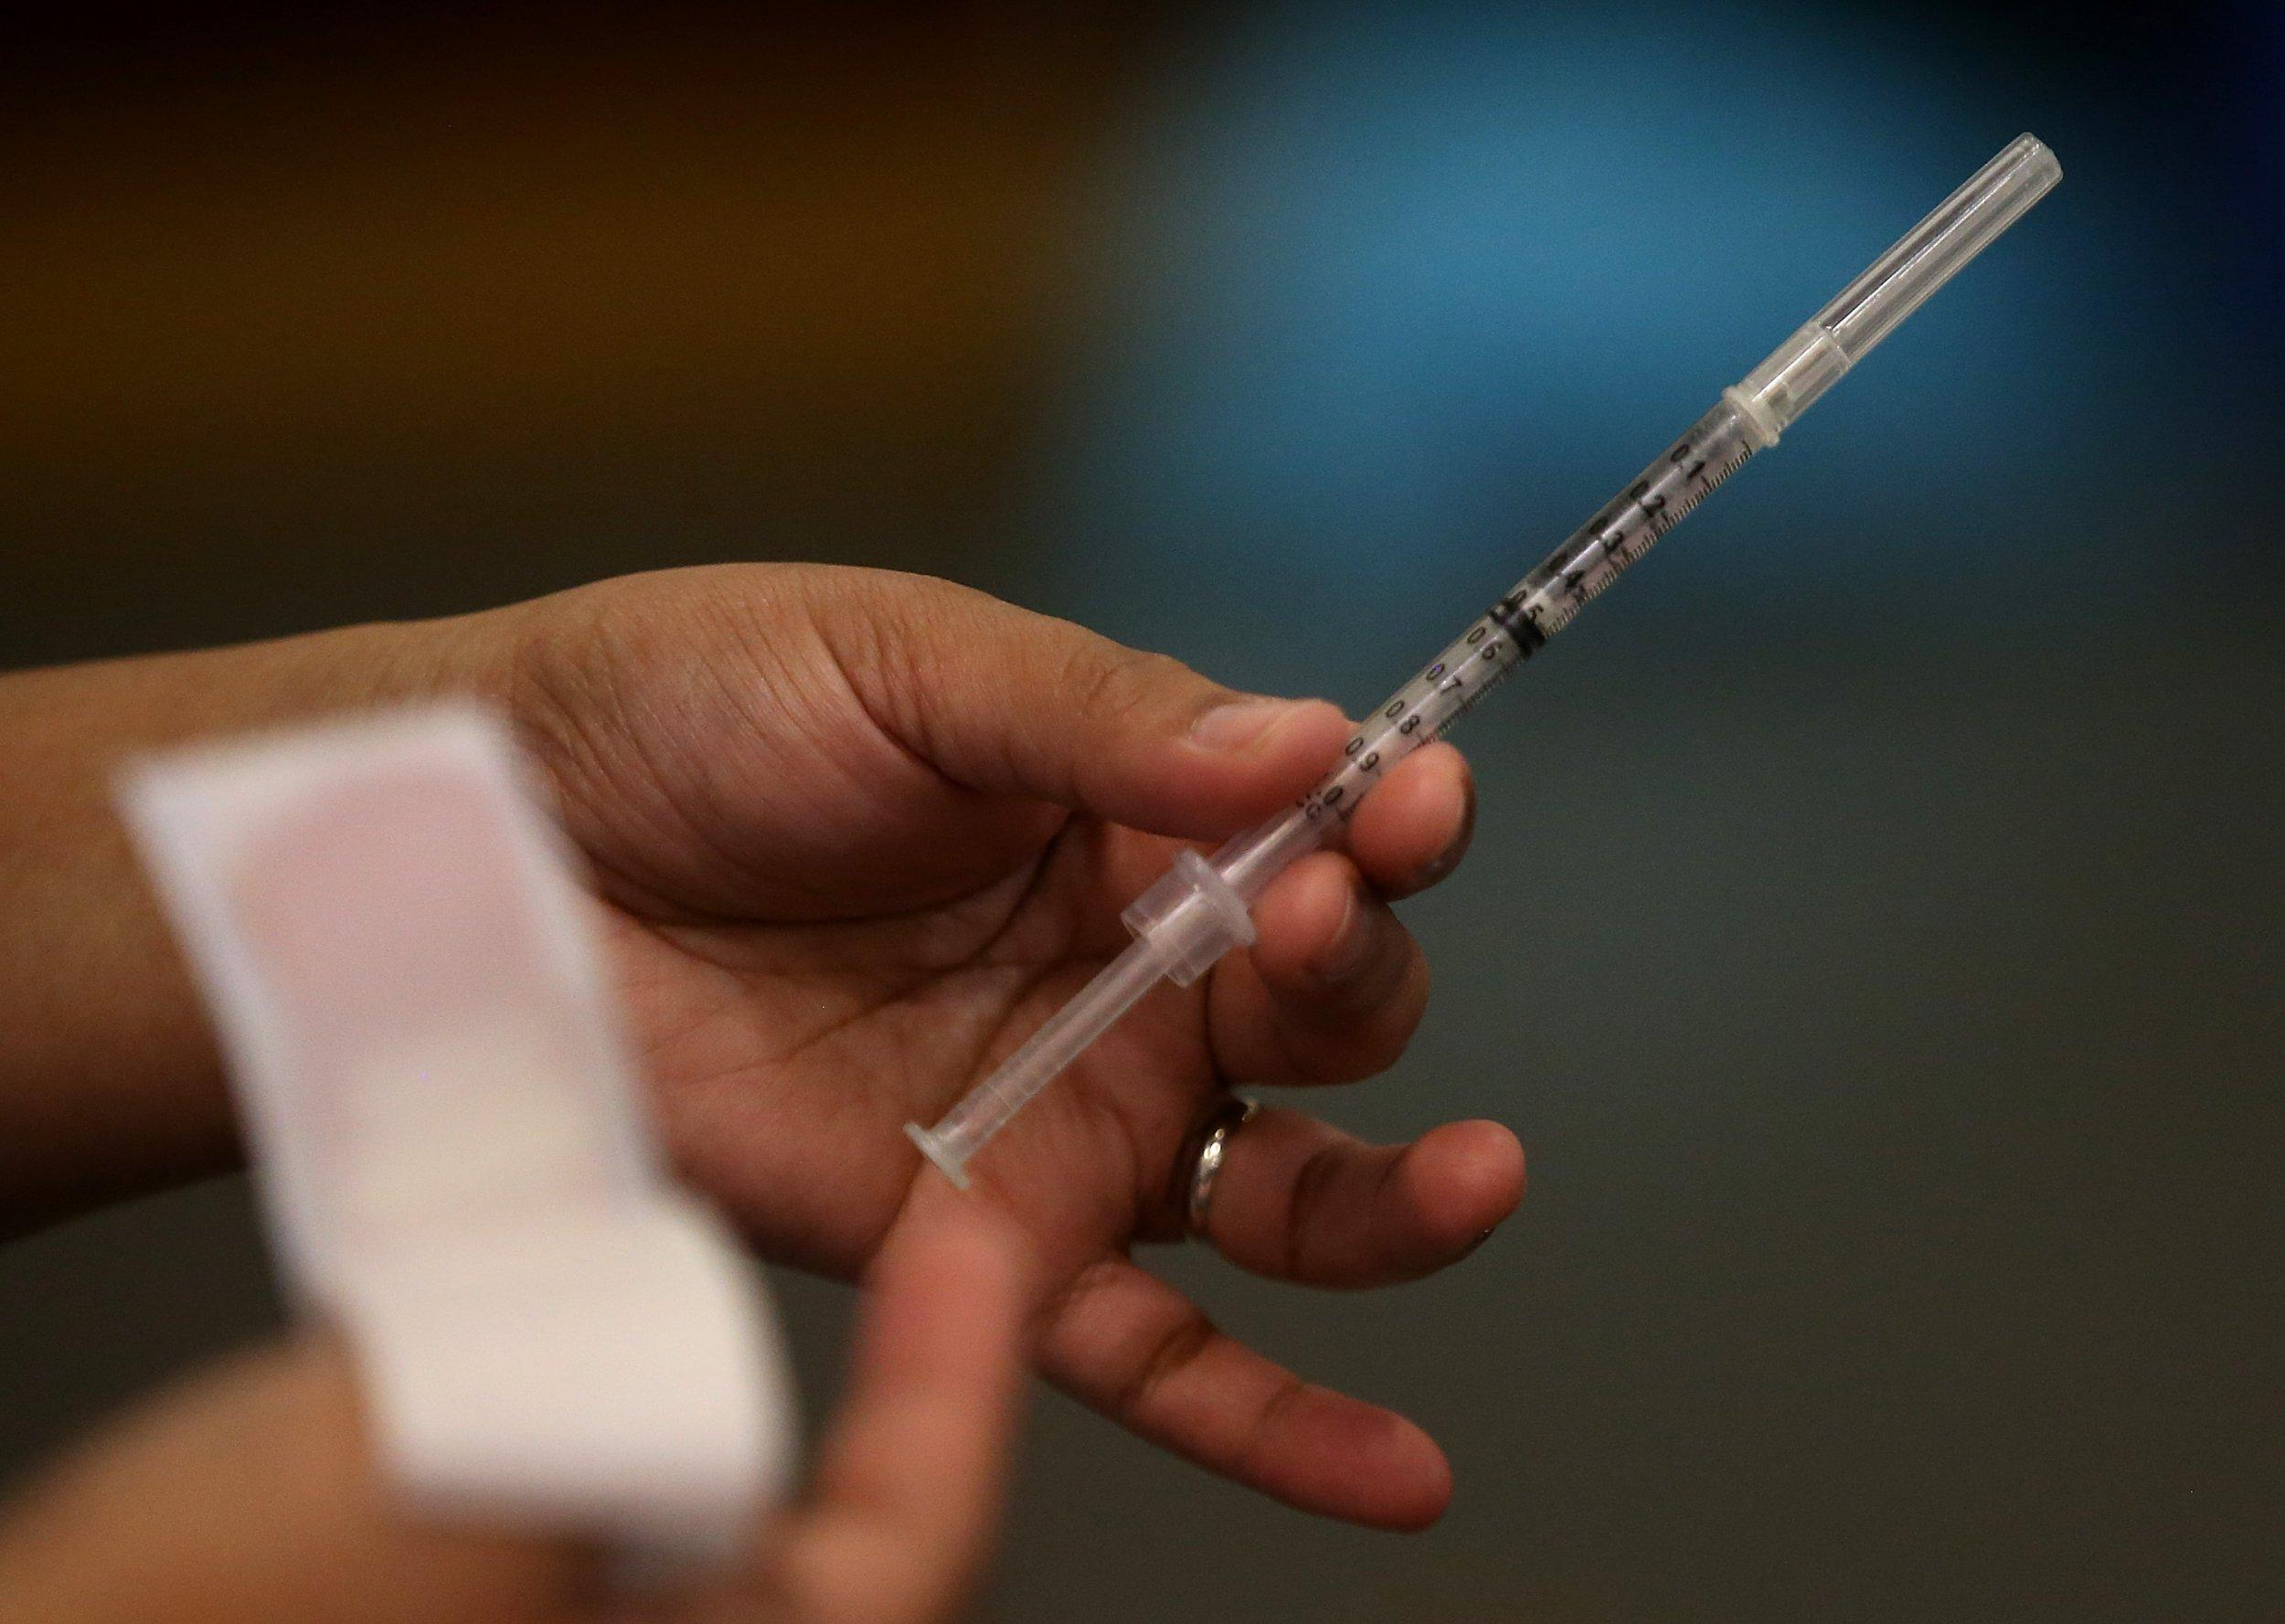 "Чтобы пережить зиму": в США осенью могут прививать третьей дозой вакцины, но не всех